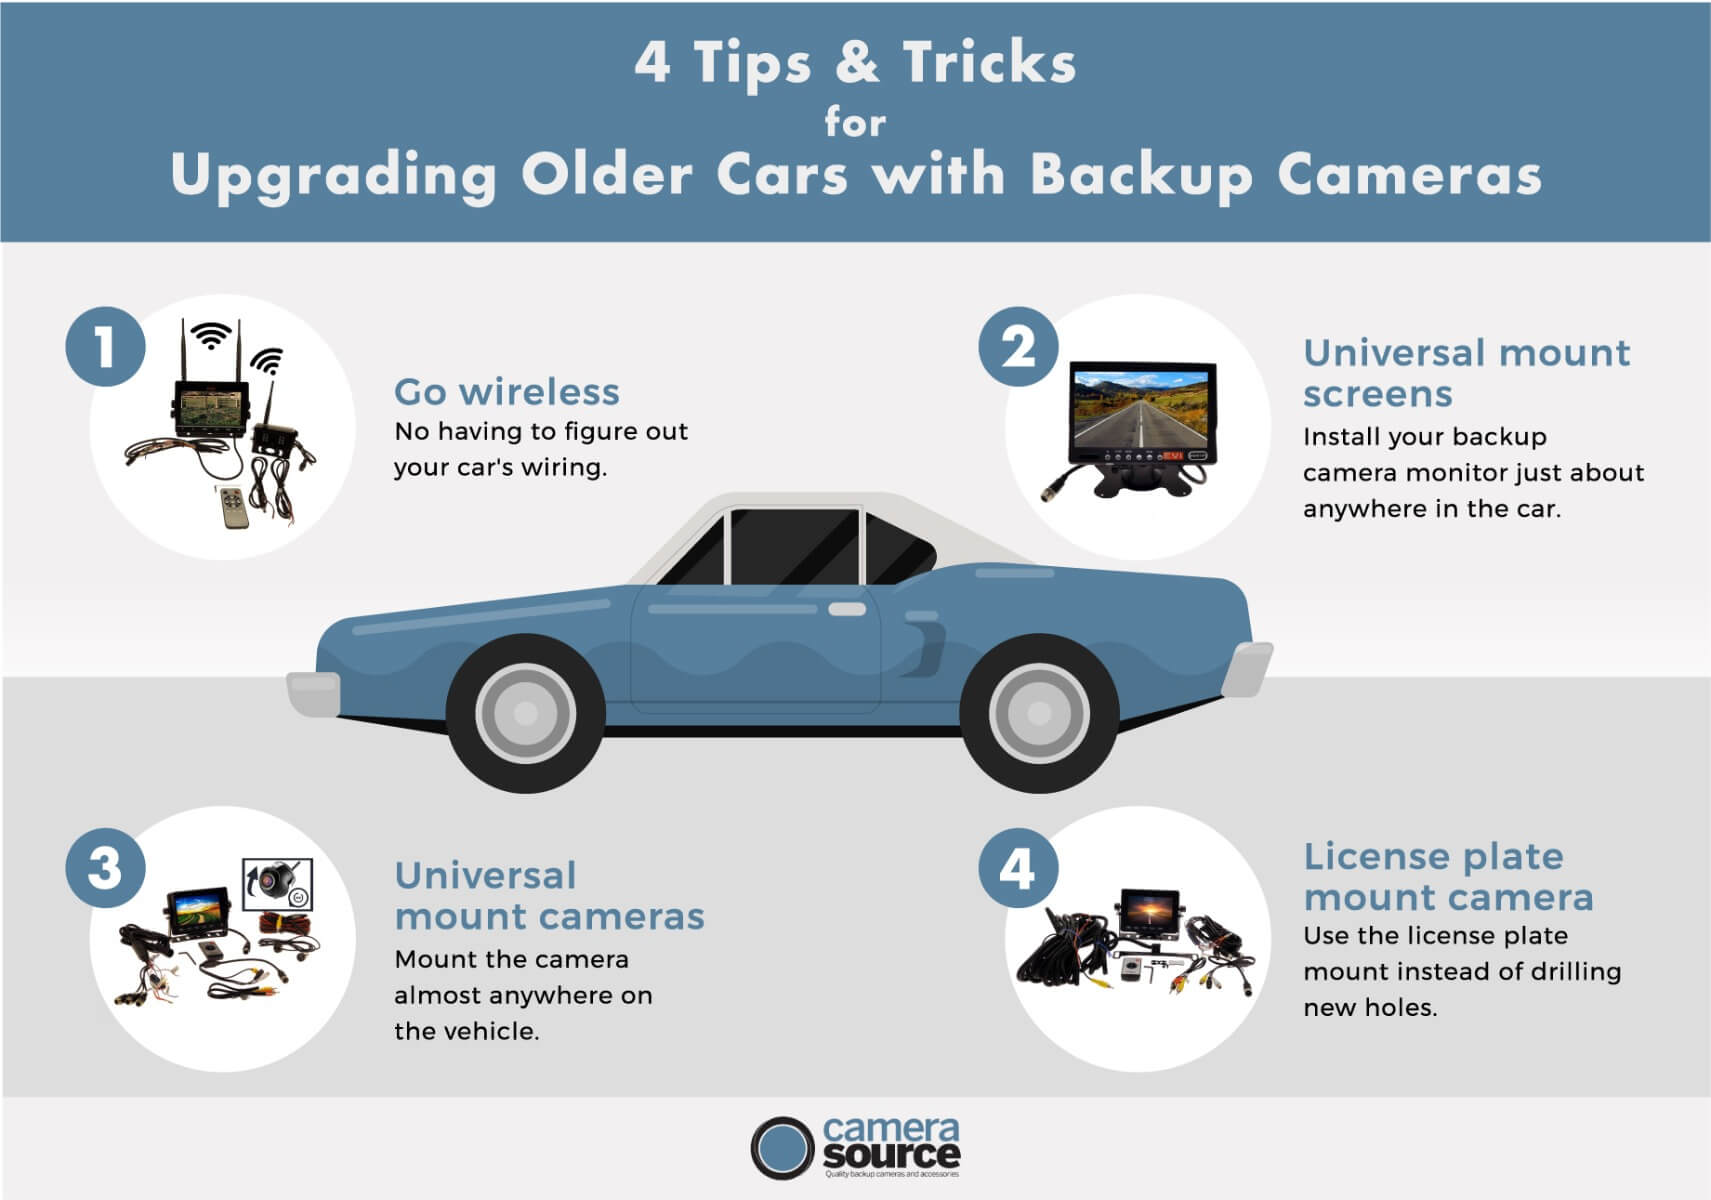 How Do Front Parking Sensors Work - Camera Source Backup Cameras